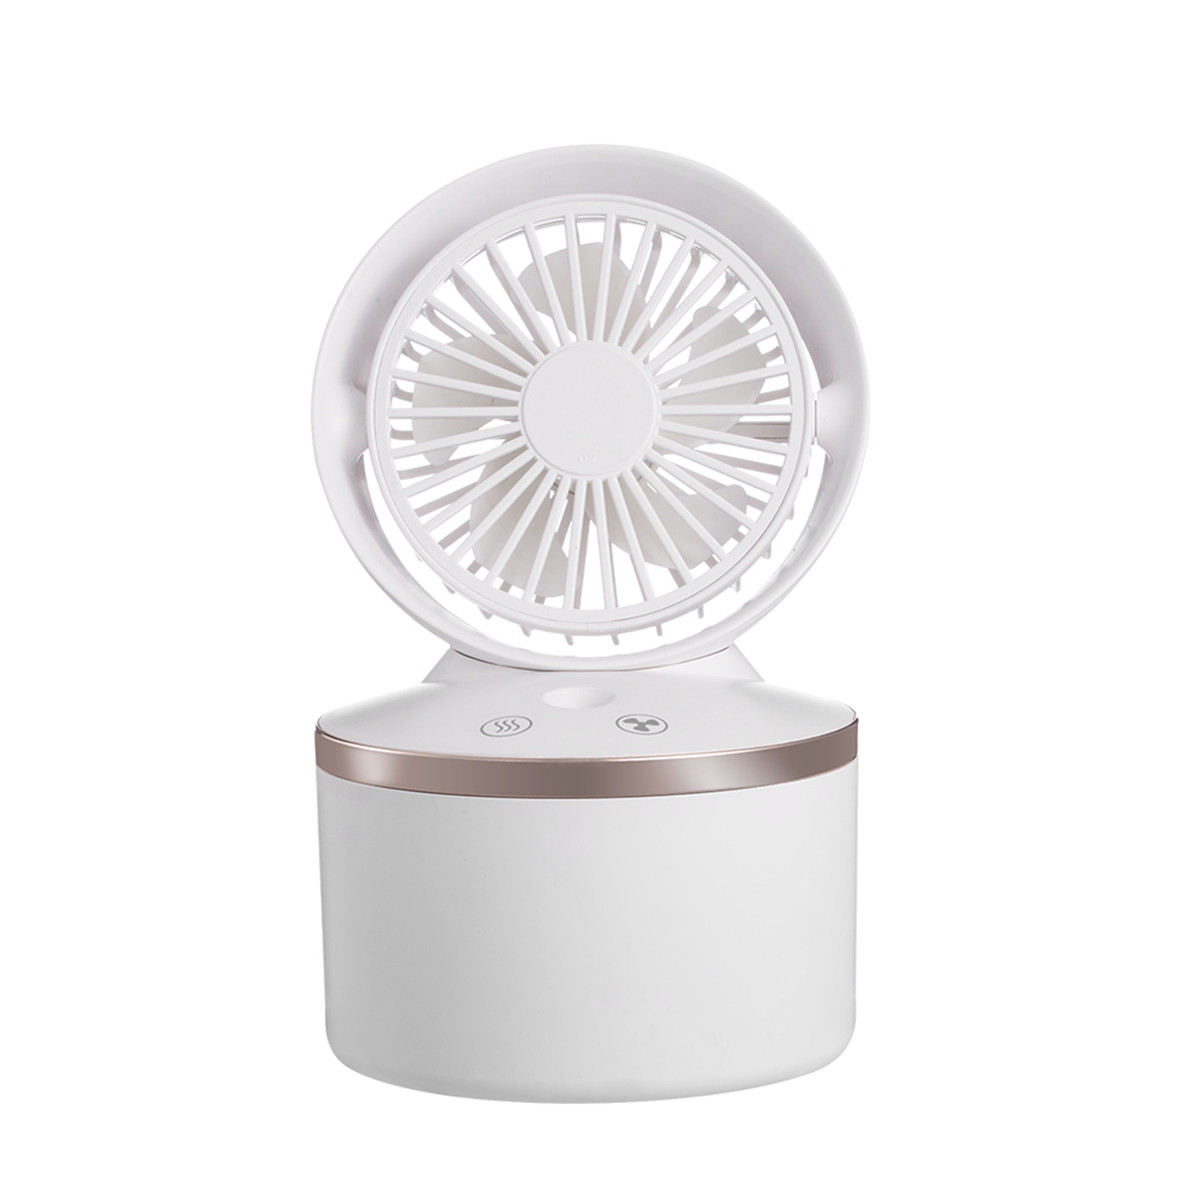 table humidifier mini fan